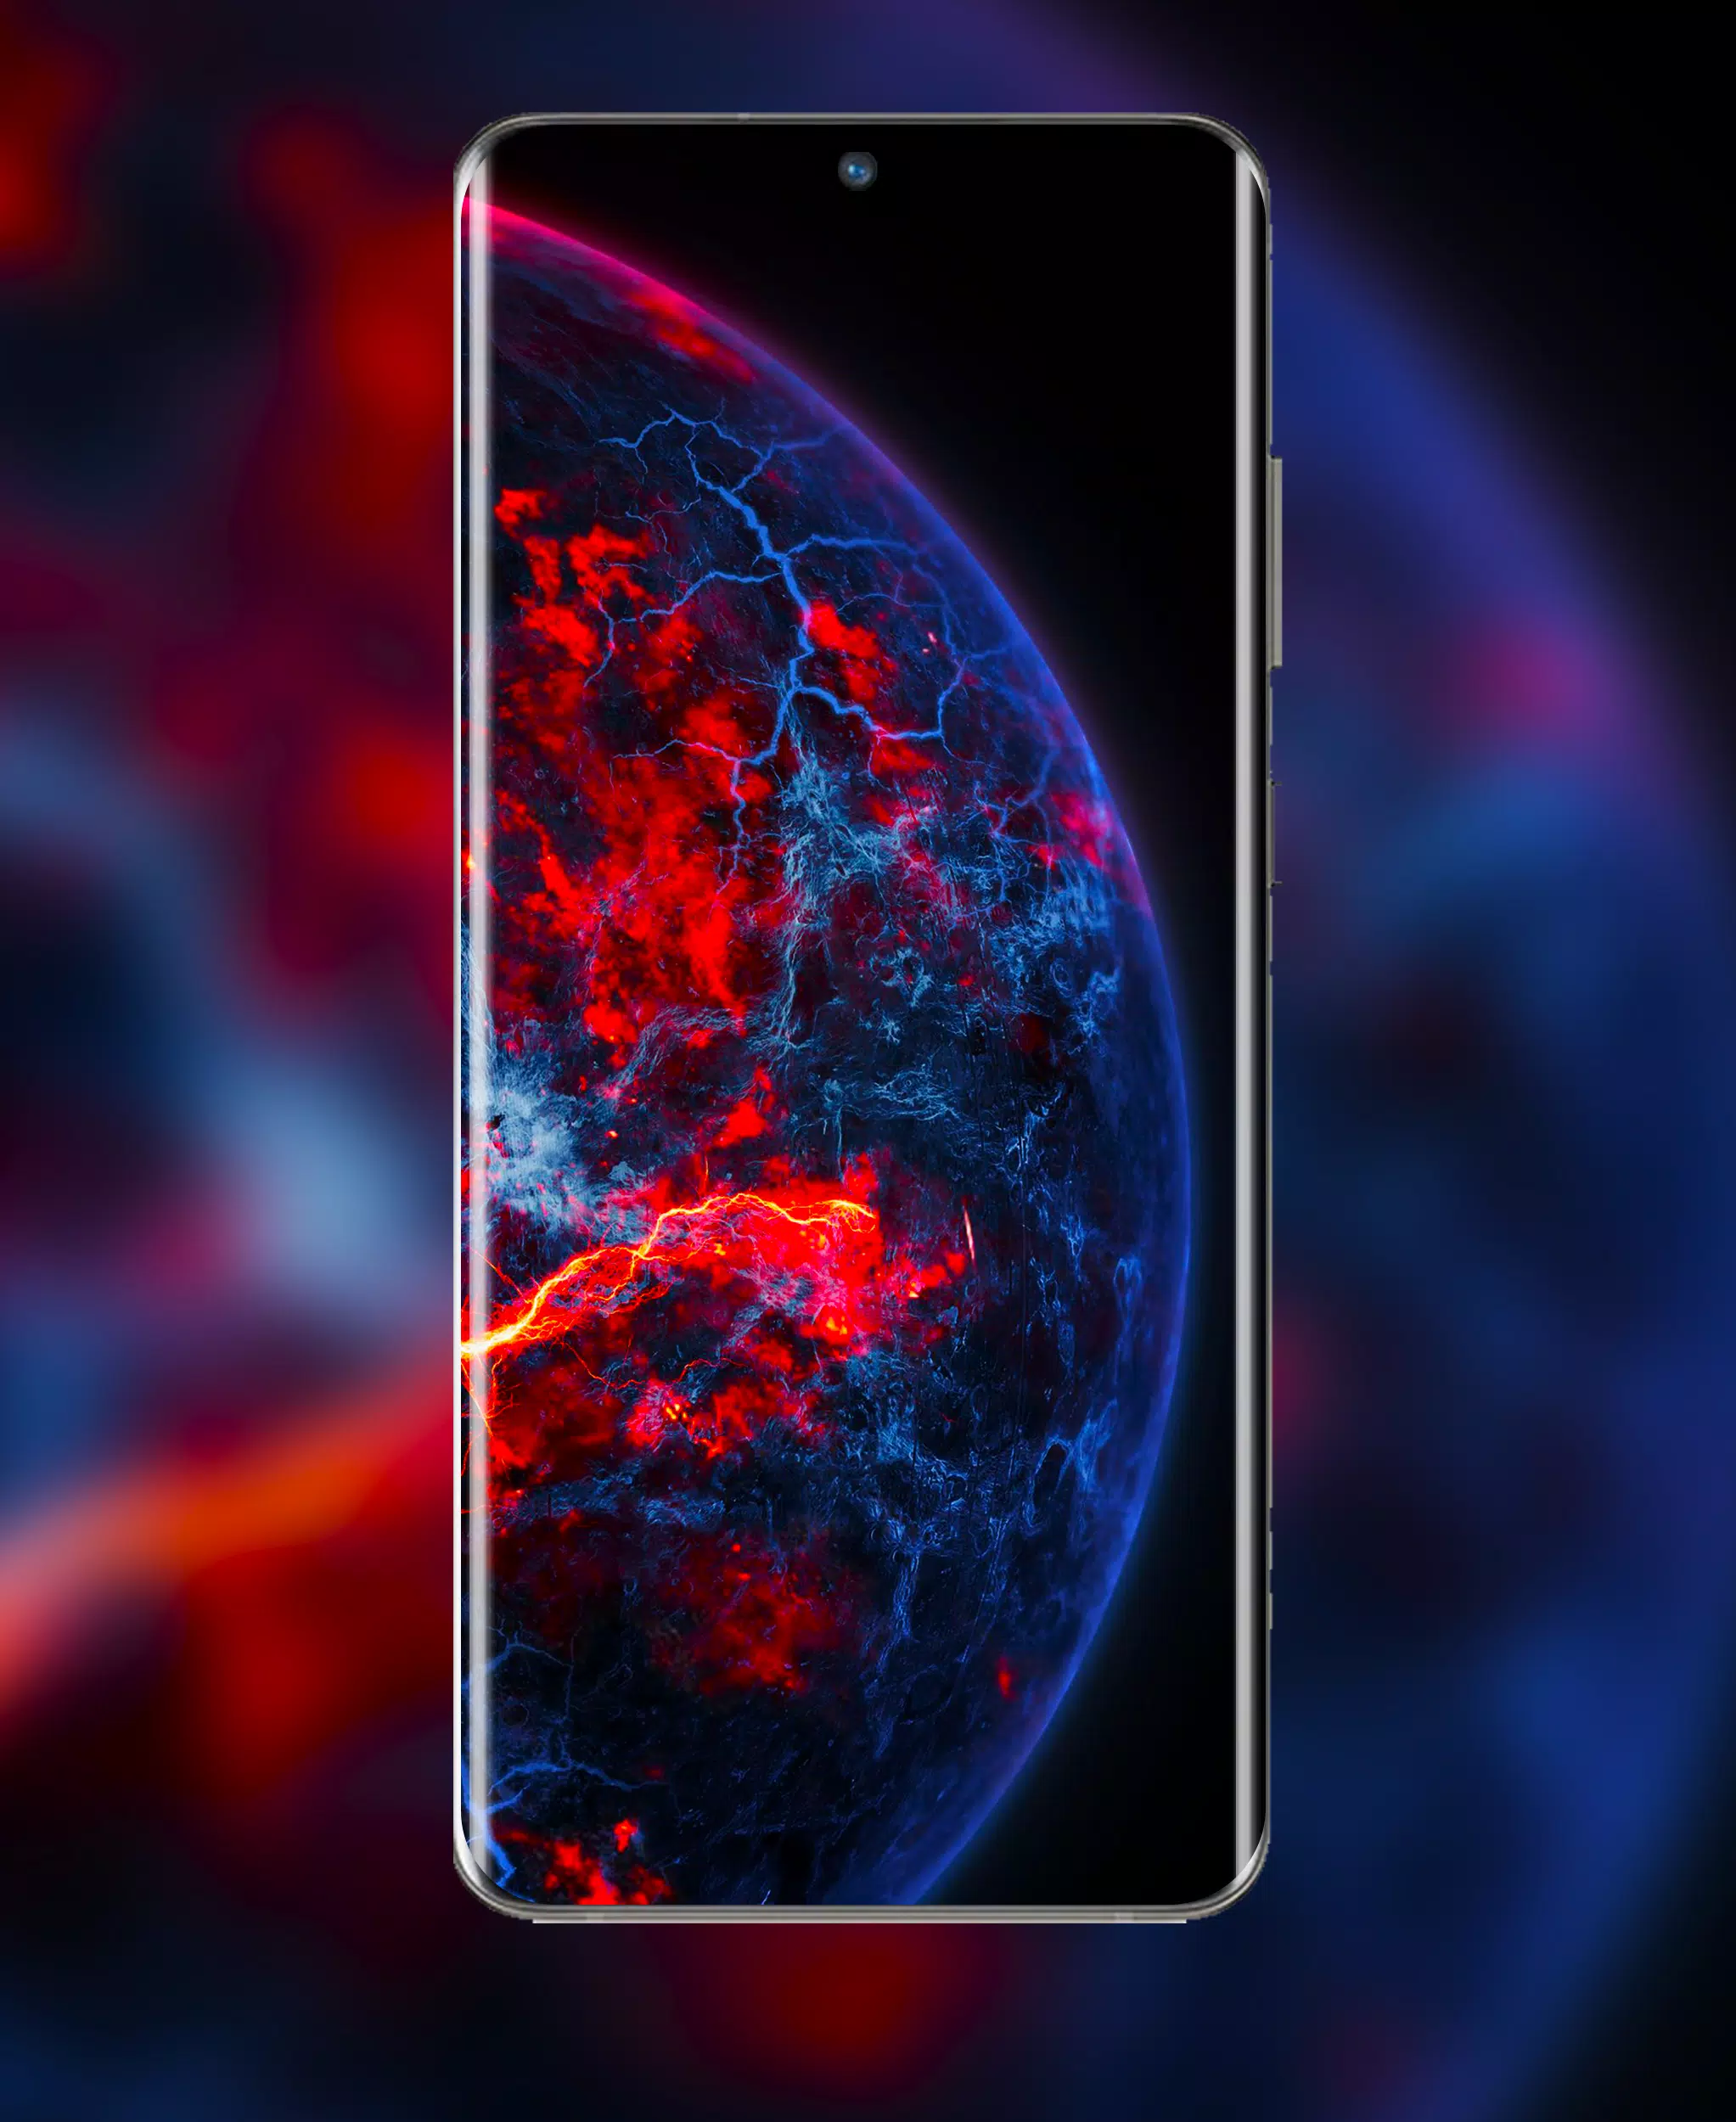 Đón chào tấm nền đẹp nhất cho siêu phẩm Galaxy S22 Ultra với bộ sưu tập hình nền hoàn hảo. Hãy tải ngay những hình nền độc đáo, chất lượng cao, mang đến cho chiếc điện thoại của bạn vẻ đẹp tuyệt vời.